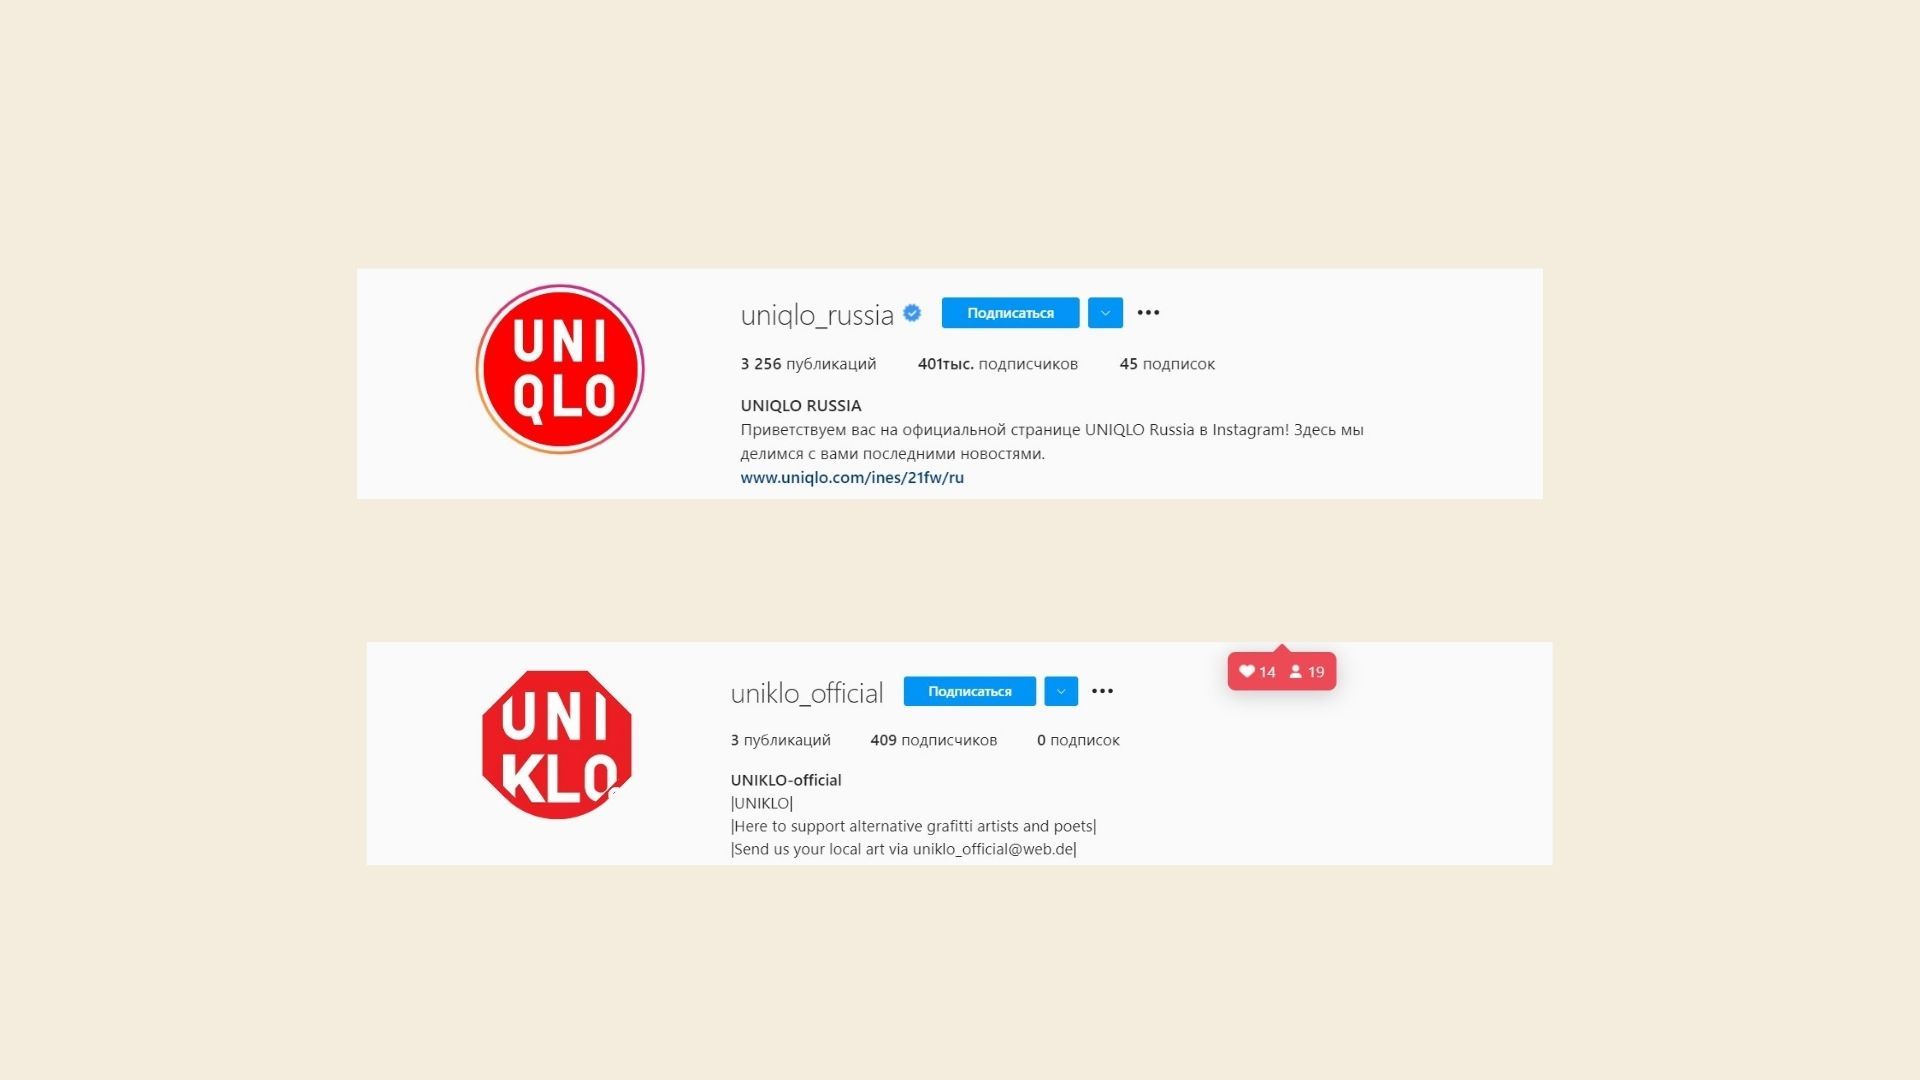 Вот пример официального аккаунта в Инстаграме* бренда Uni Qlo и их подражателей — по-моему, все очевидно